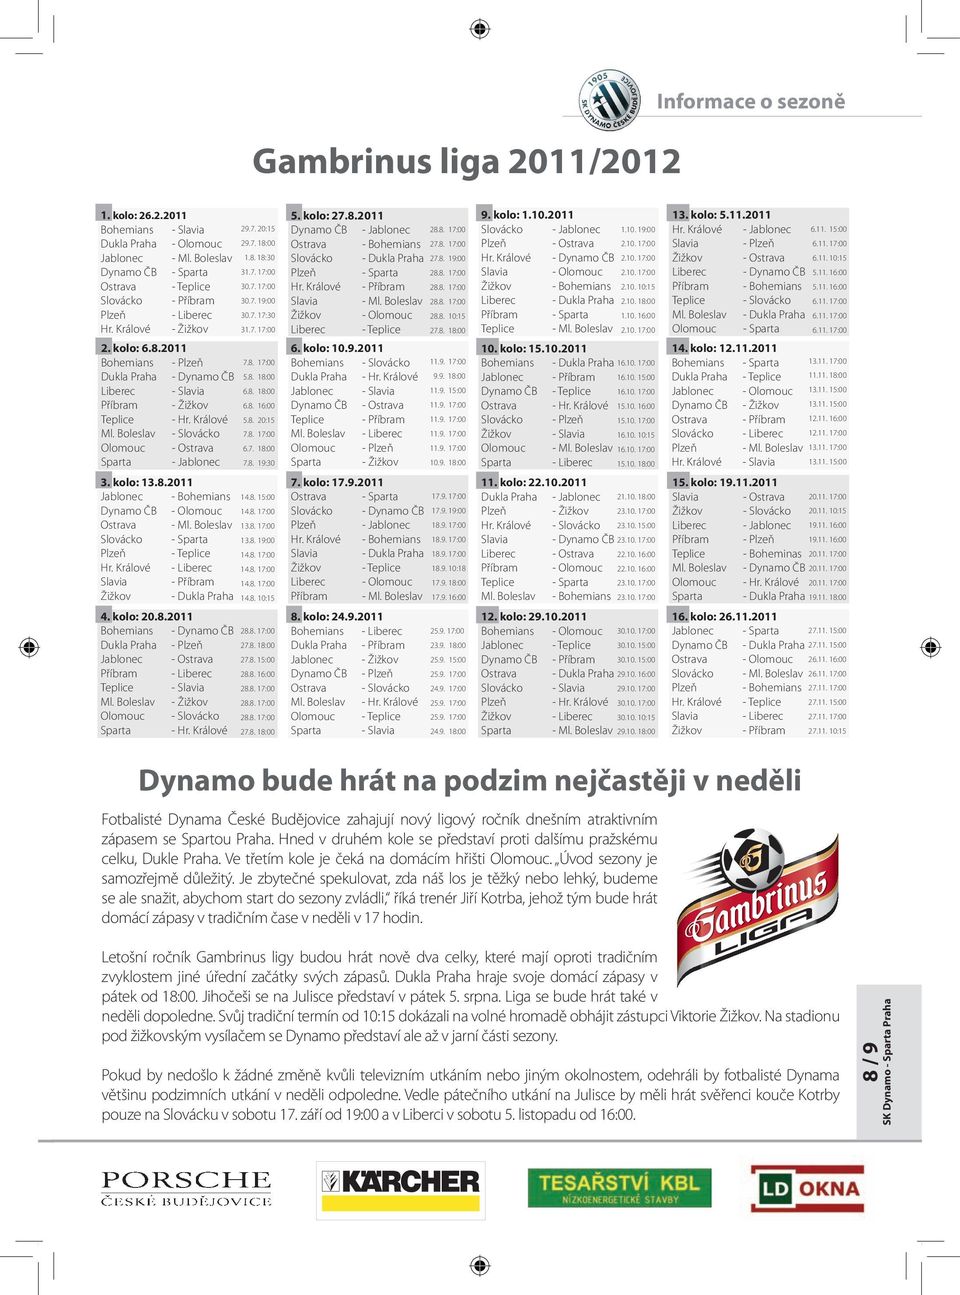 .2 Jablonec - Bohemians Dynamo ČB - Olomouc Ostrava - Ml. Boleslav Slovácko - Sparta Plzeň - Teplice Hr. Králové - Liberec Slavia - Příbram Žižkov - Dukla Praha 29.. 2:1 29.. 1: 1.. 1: 1.. 1:.. 1:.. 19:.